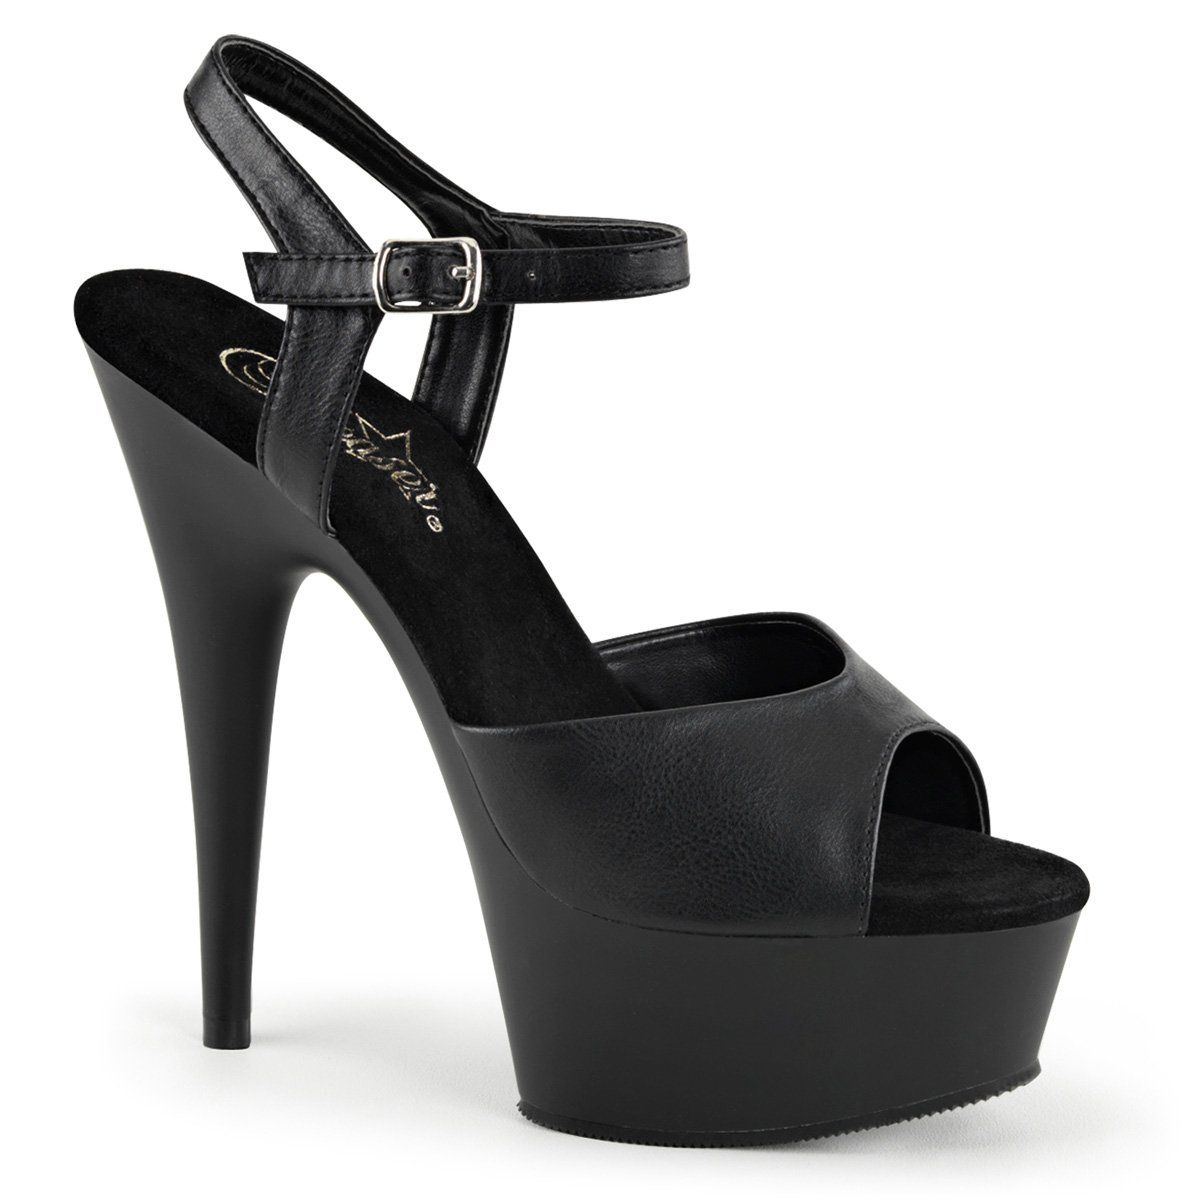 Black Platform Sandals - High Heeled Sandals - Ankle Wrap Sandals - Lulus